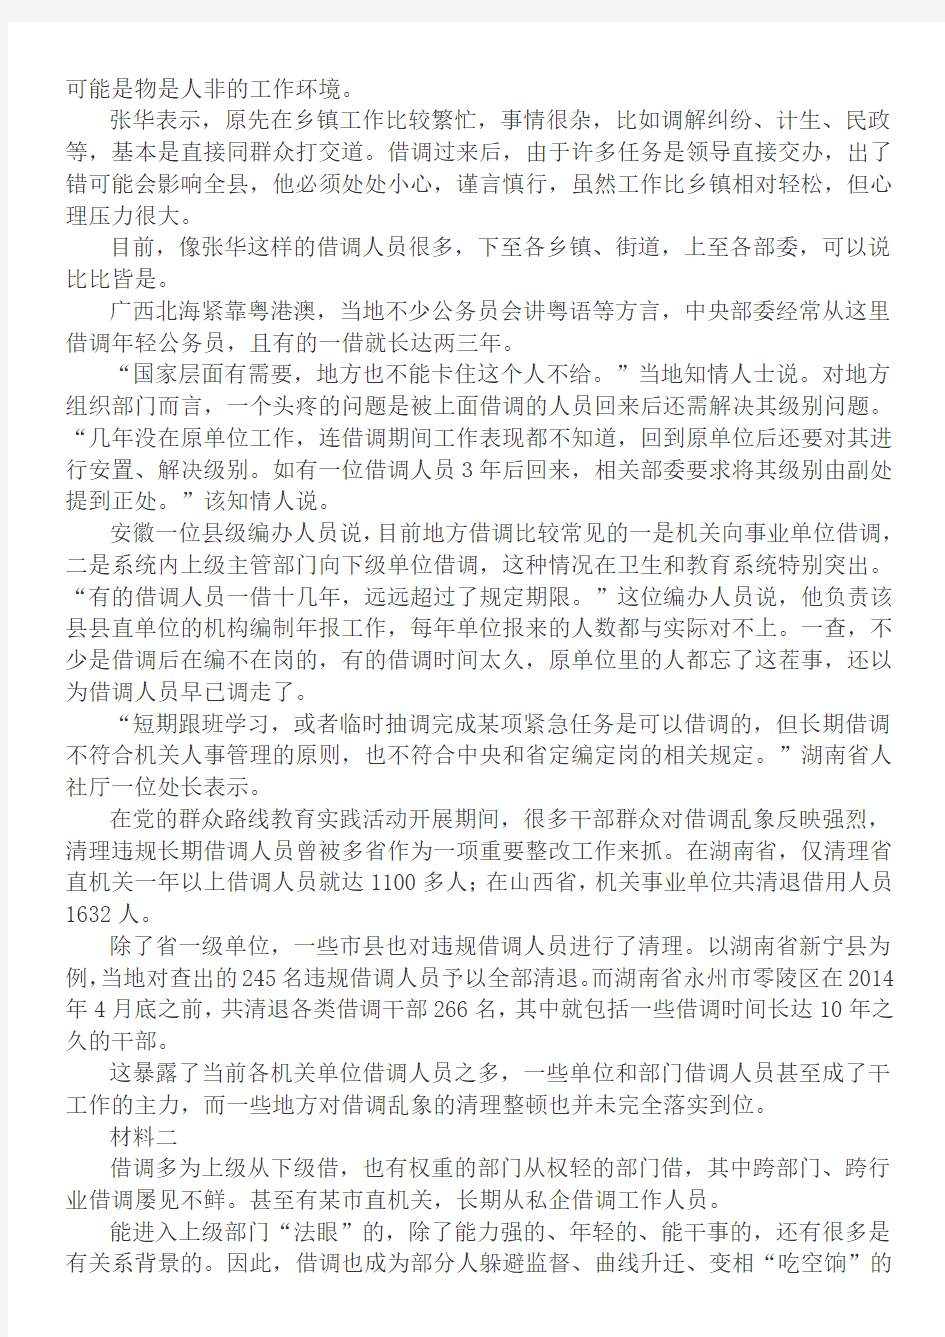 2015年3月安徽淮南市直遴选面试真题及答案